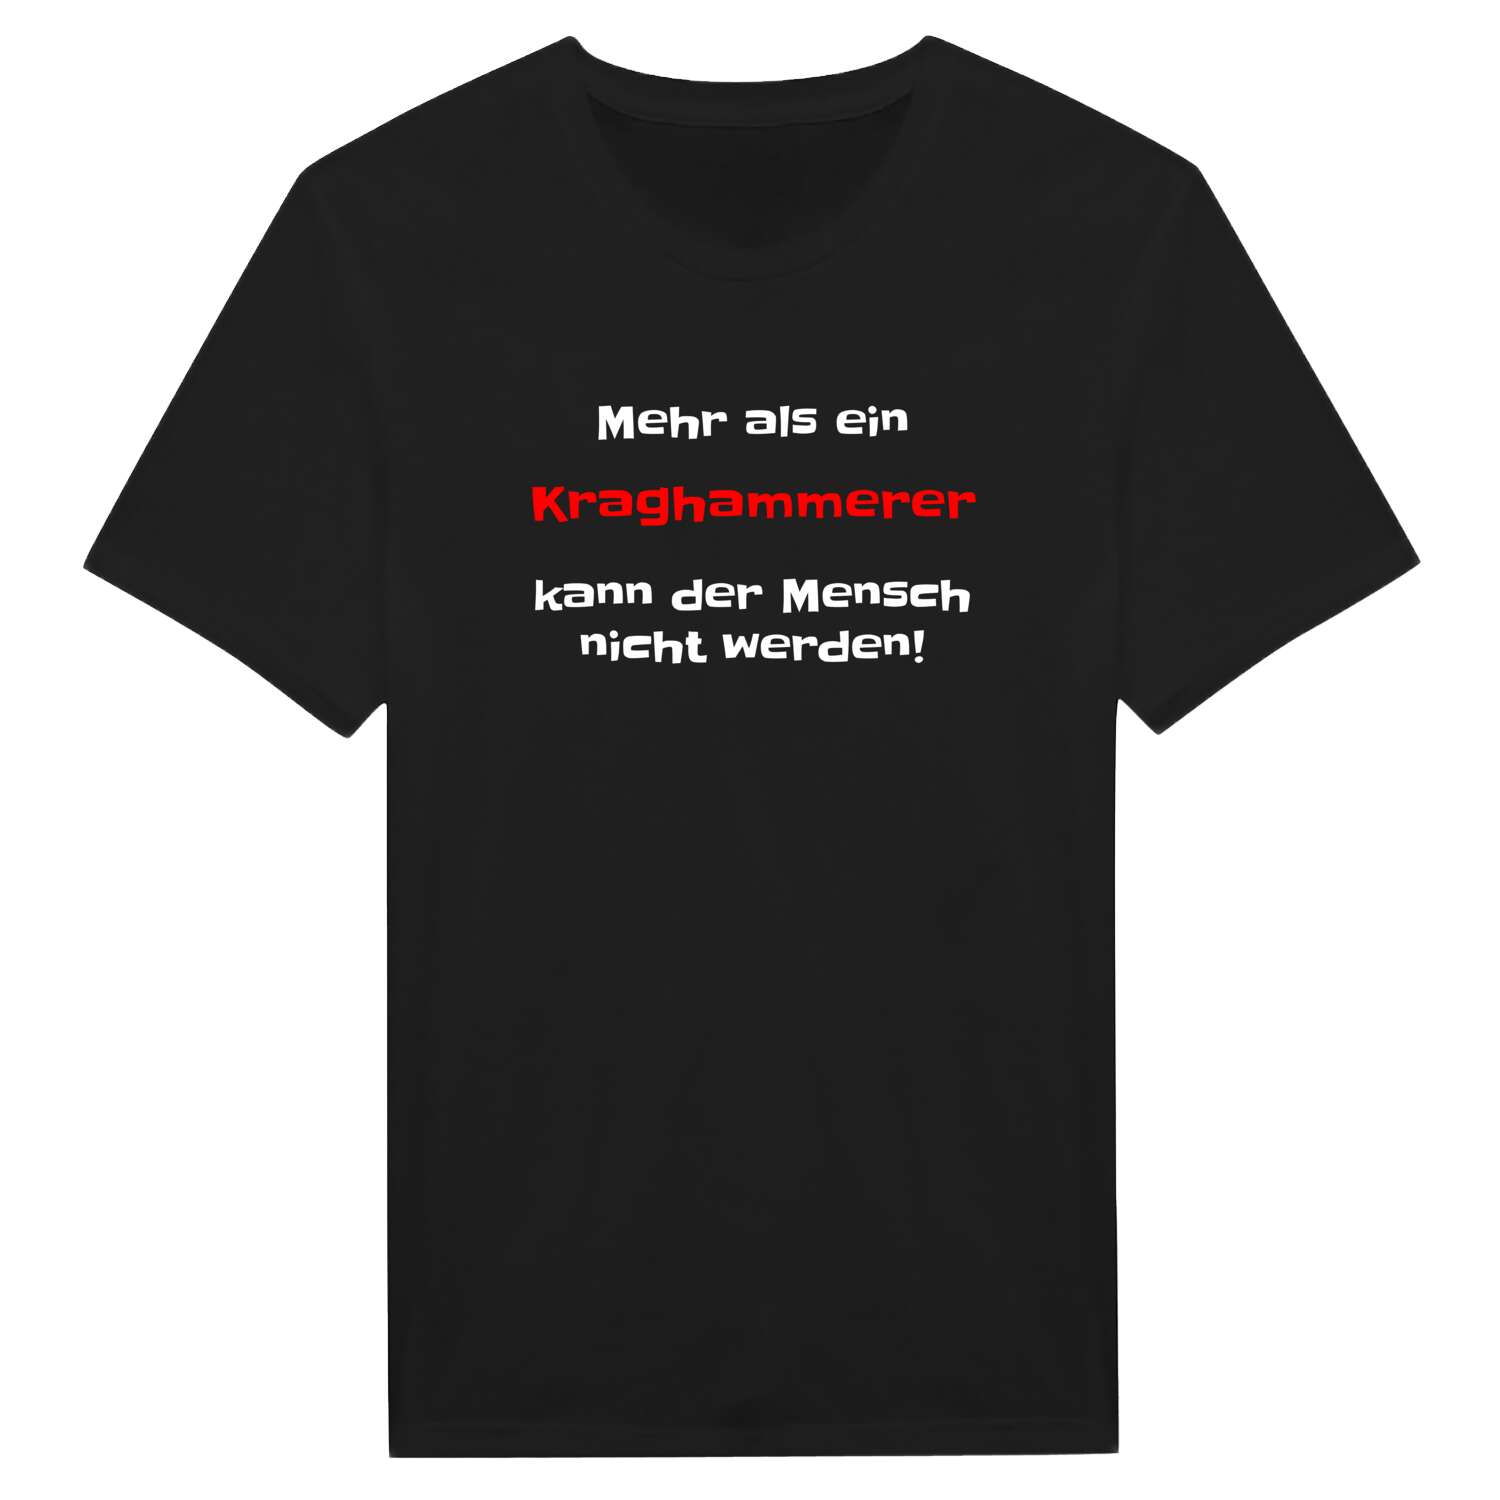 Kraghammer T-Shirt »Mehr als ein«